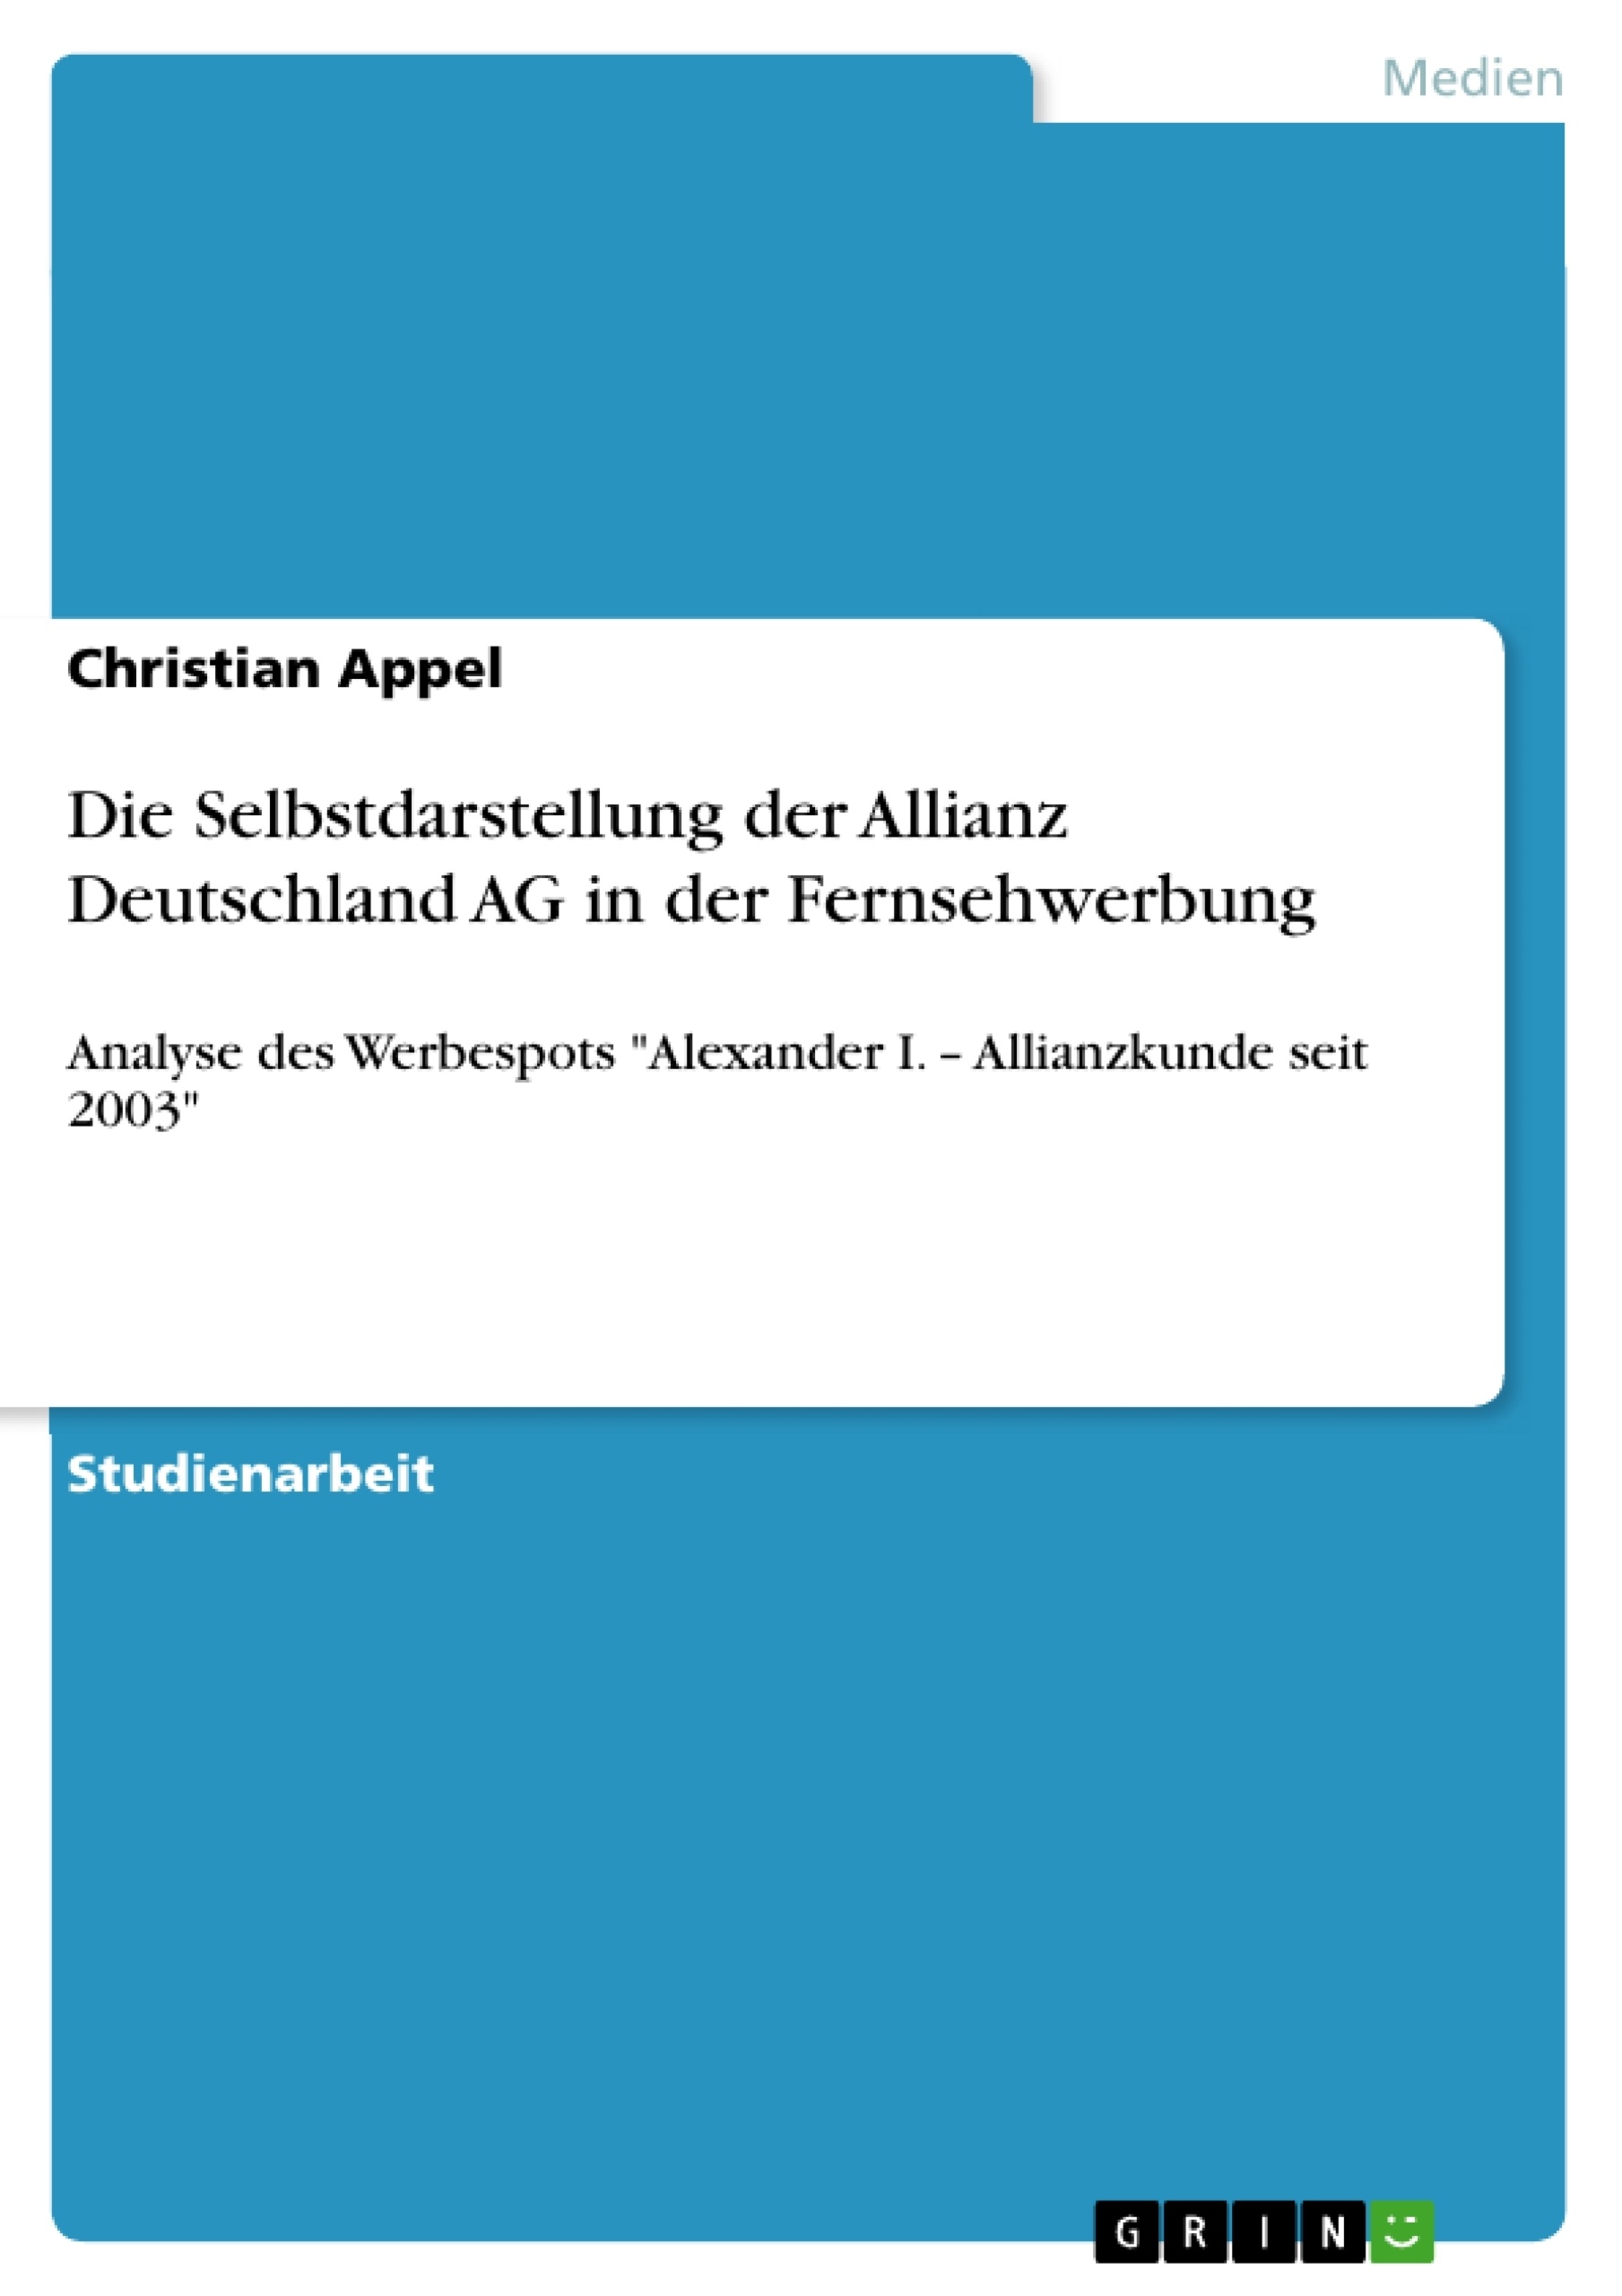 Titre: Die Selbstdarstellung der Allianz Deutschland AG in der Fernsehwerbung